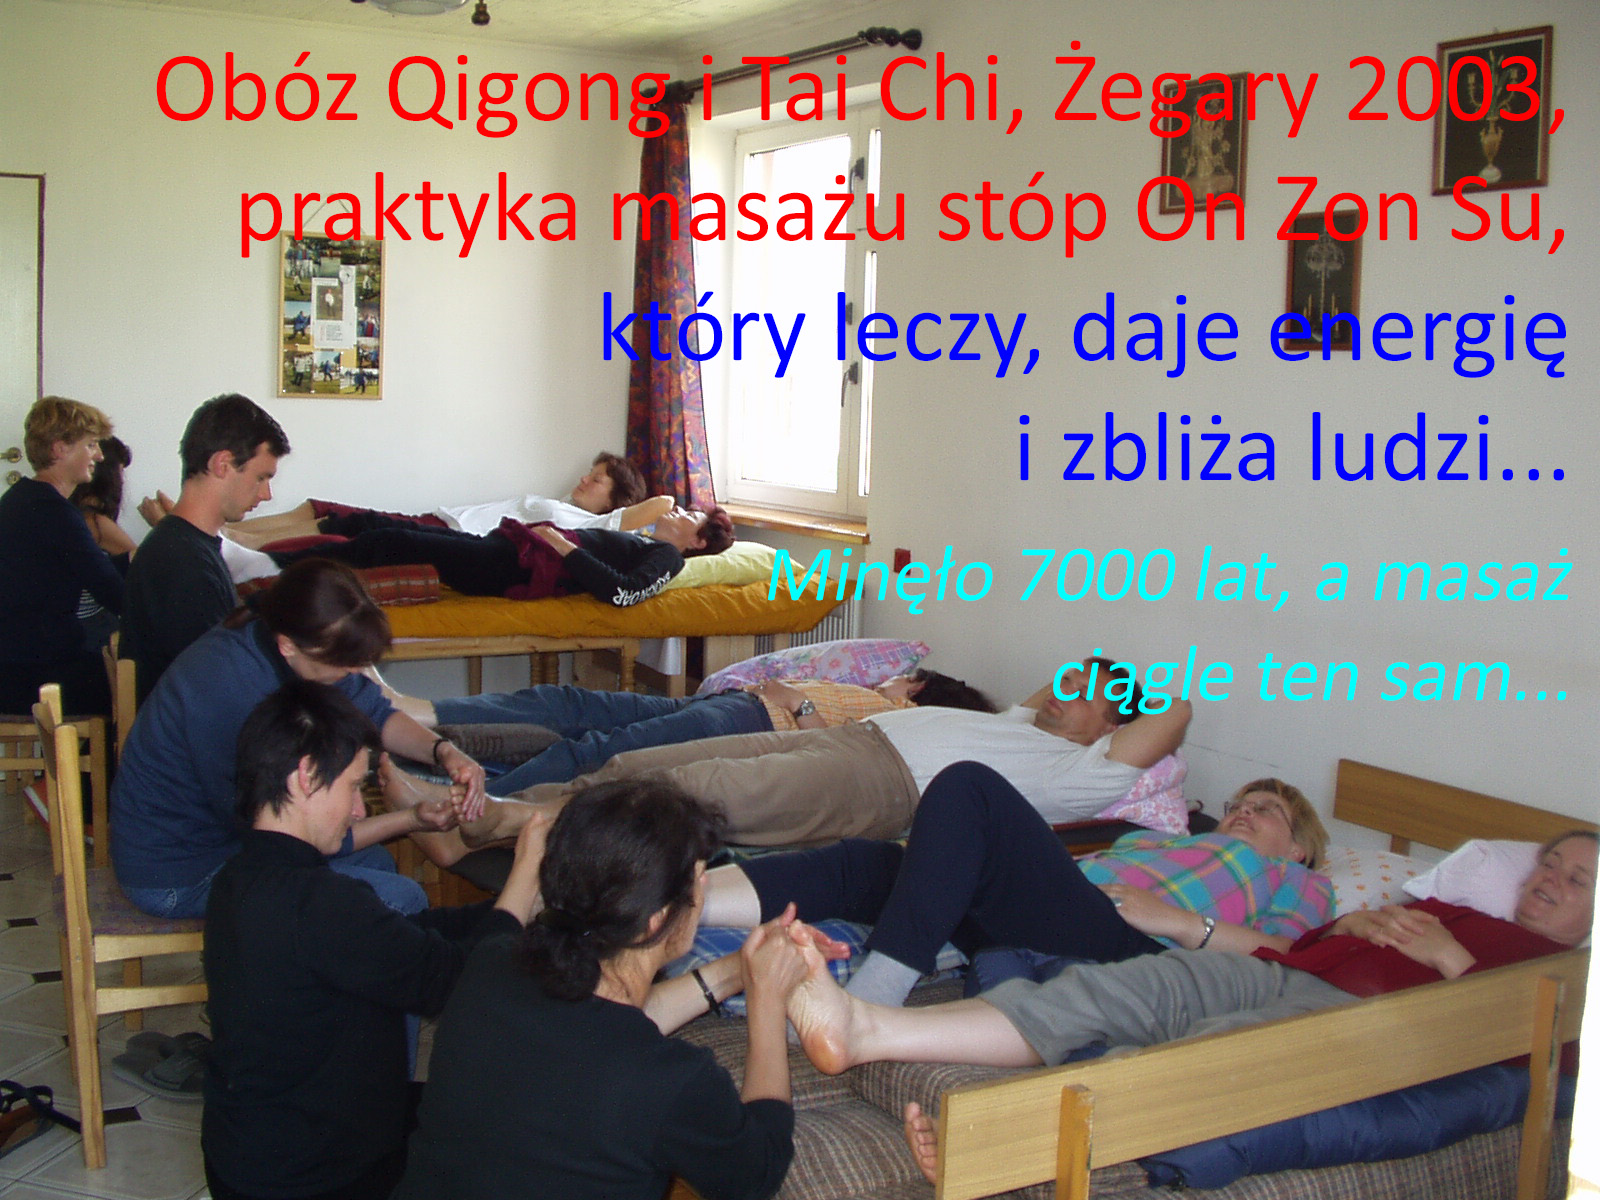 Praktyka masażu On Zon Su, zbliżającego, zaprzyjaźniającego ze sobą ludzi, dającego zdrowie,  oraz harmonię ciała i umysłu, na obozie Qigong i Tai Chi, prowadzonym jak zwykle przez Ladę Malinakovą, w Żegarach w 2003 roku, Fot. Marian Nosal 2003